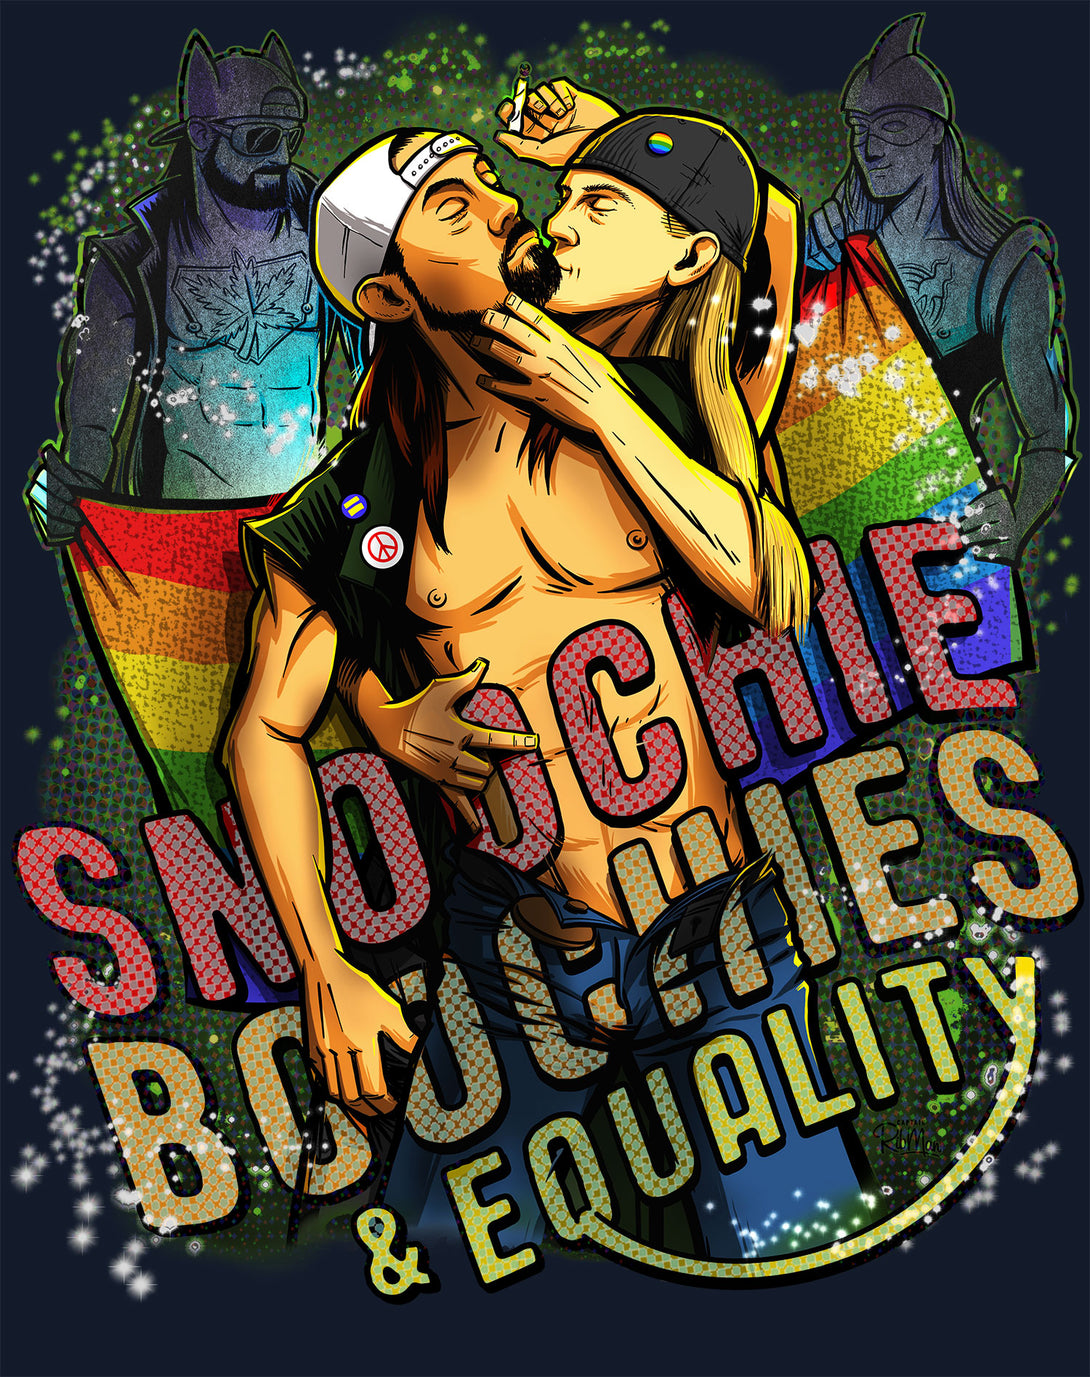 Kevin Smith Jay & Silent Bob Reboot LGBTQ Splash LDN Edition Official Men's T-Shirt Navy - Urban Species Design Close Up